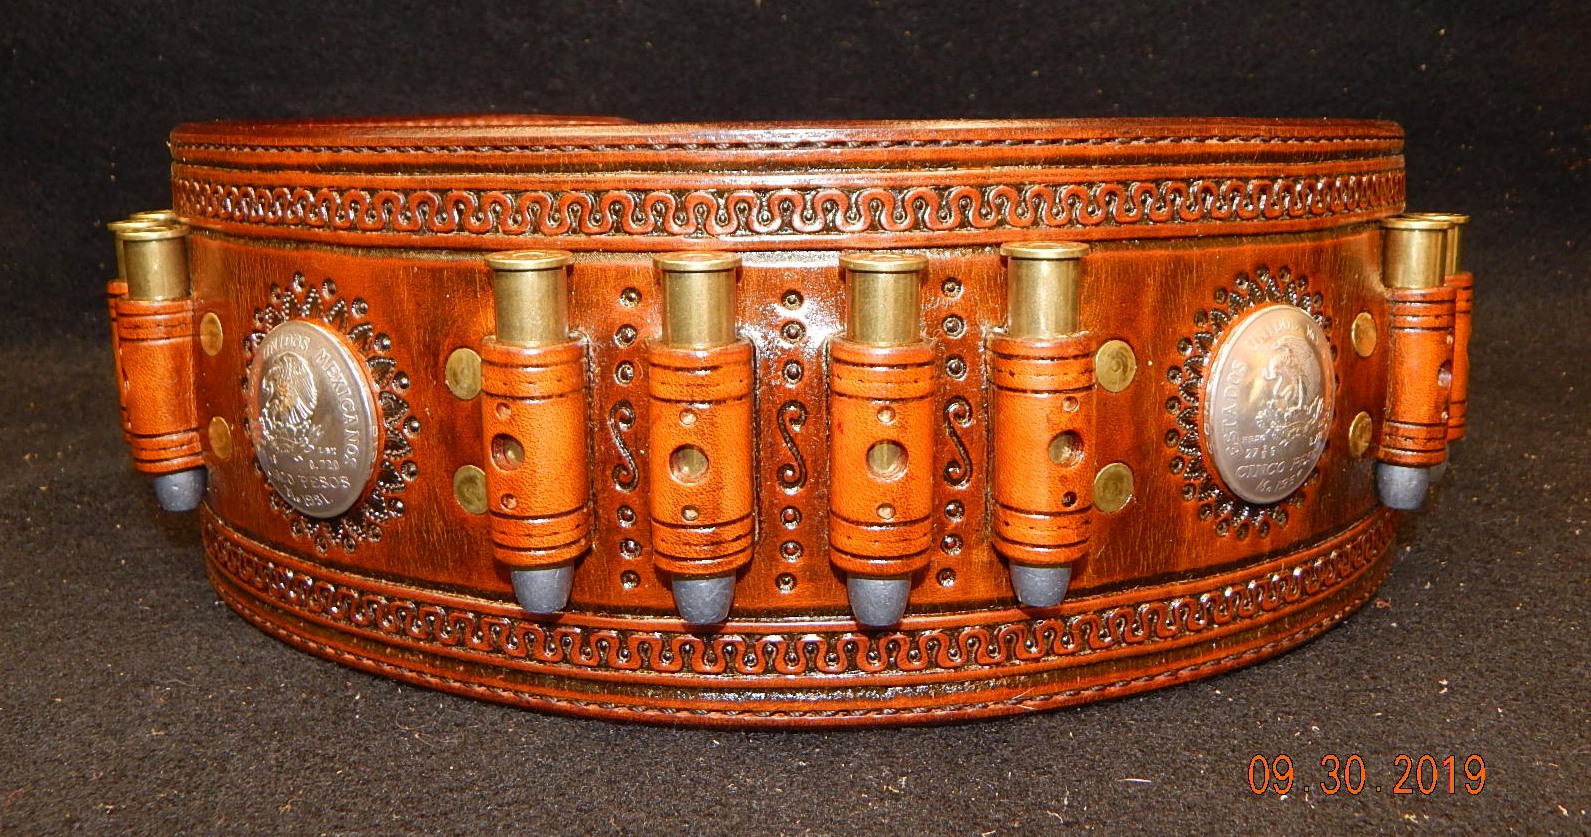 Leather Quigley Belt: Redmond Design